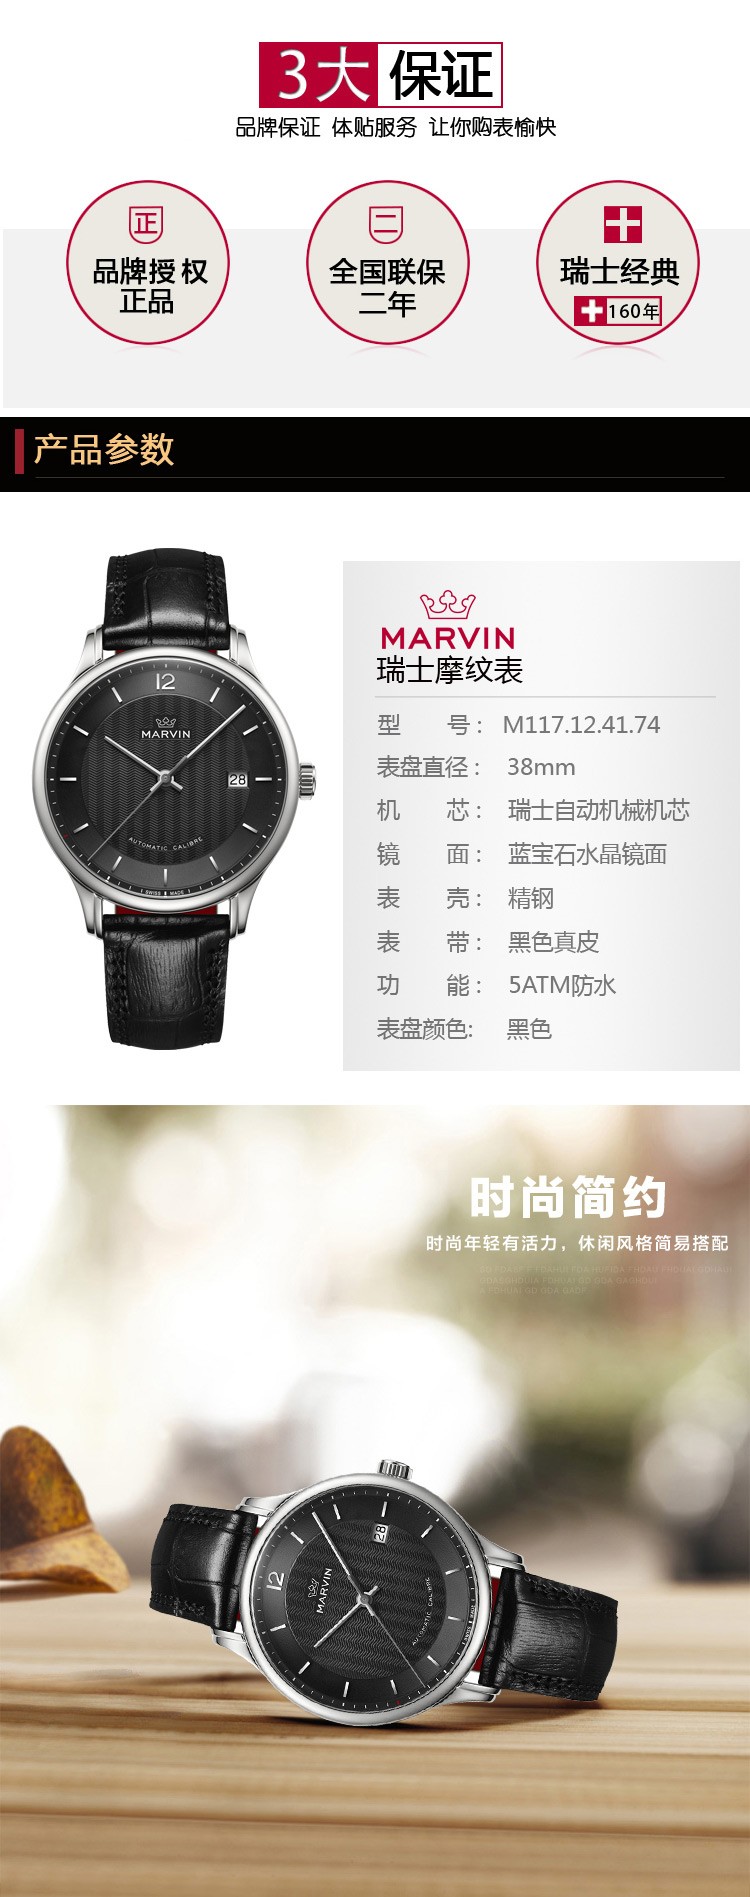 摩纹Marvin-Malton160圆形系列 M117.12.41.74 机械男表